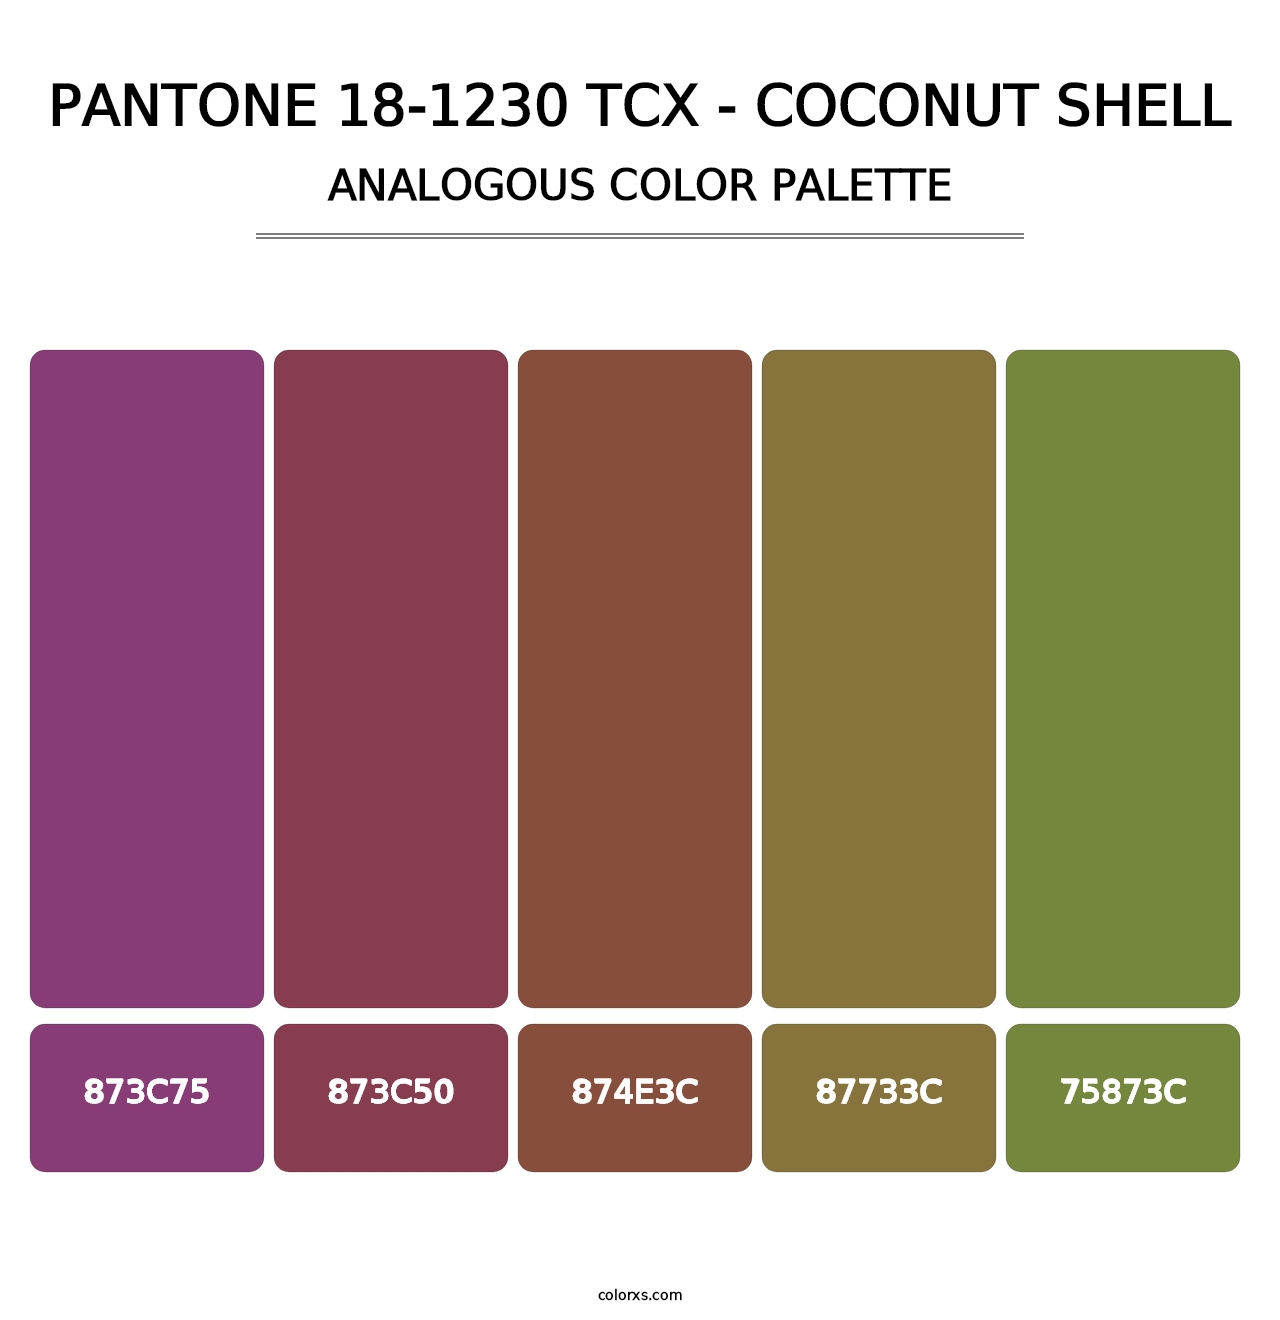 PANTONE 18-1230 TCX - Coconut Shell - Analogous Color Palette